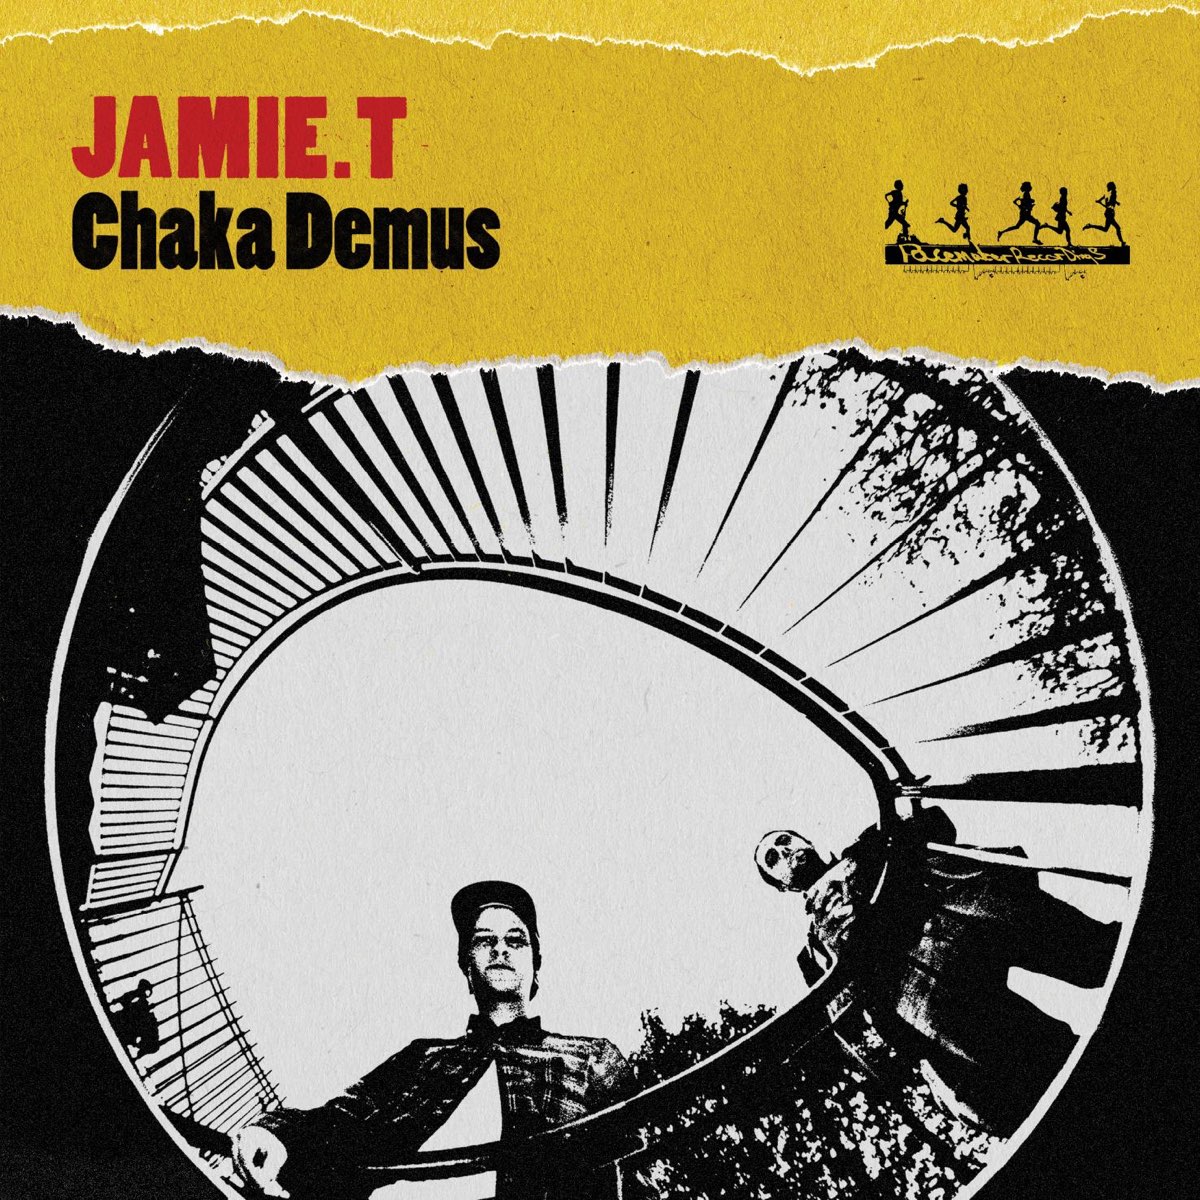 Jamie T — Chaka Demus cover artwork